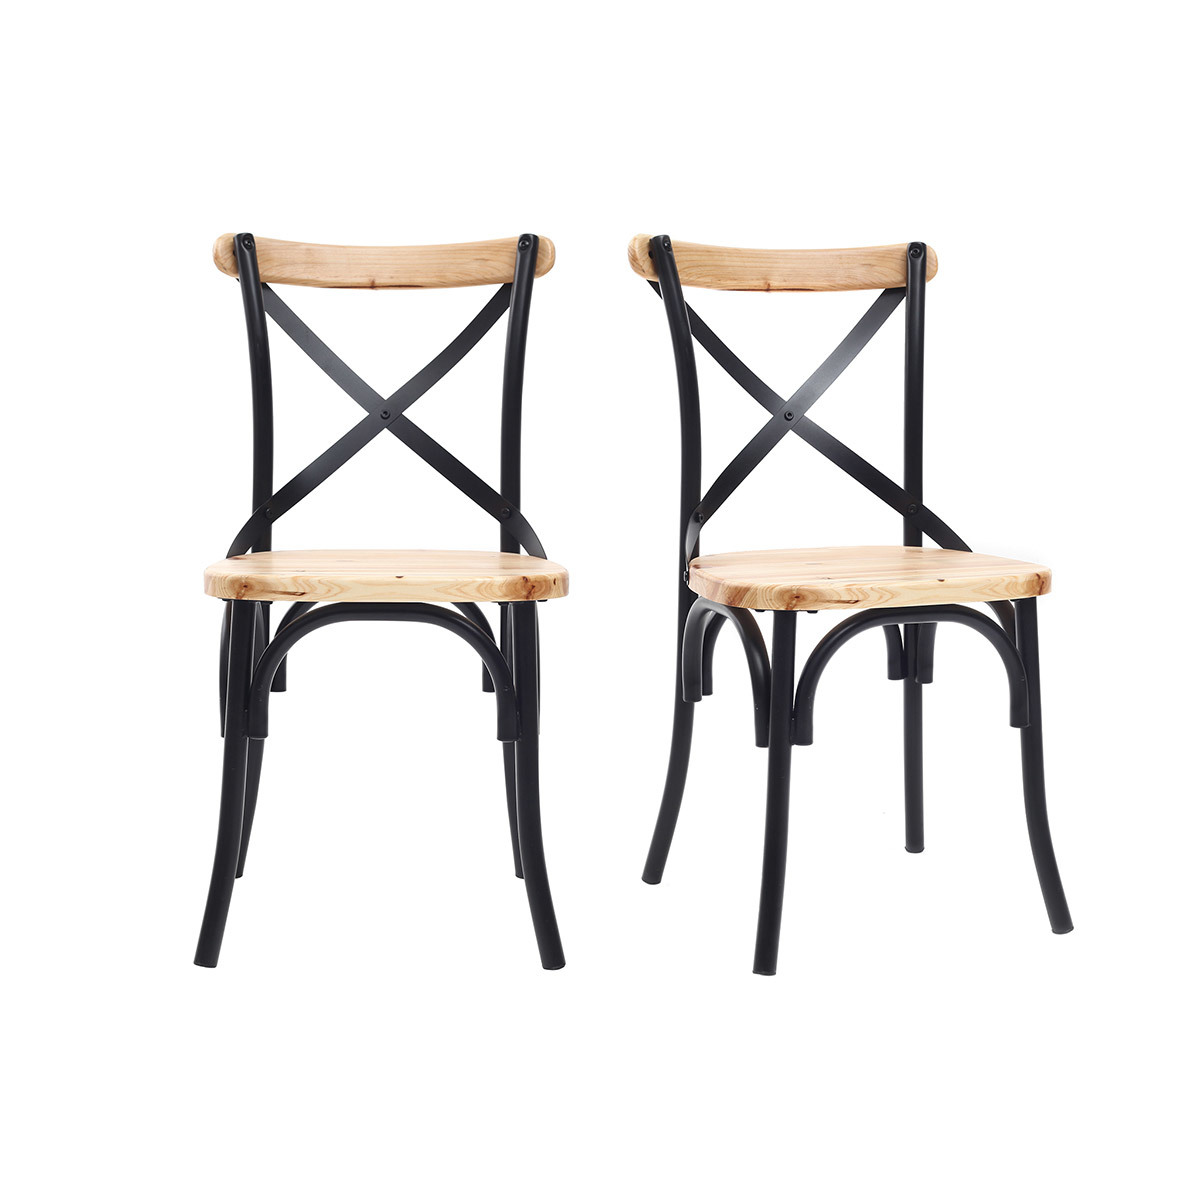 Chaises industrielles en métal noir et bois (lot de 2) JAKE vue1